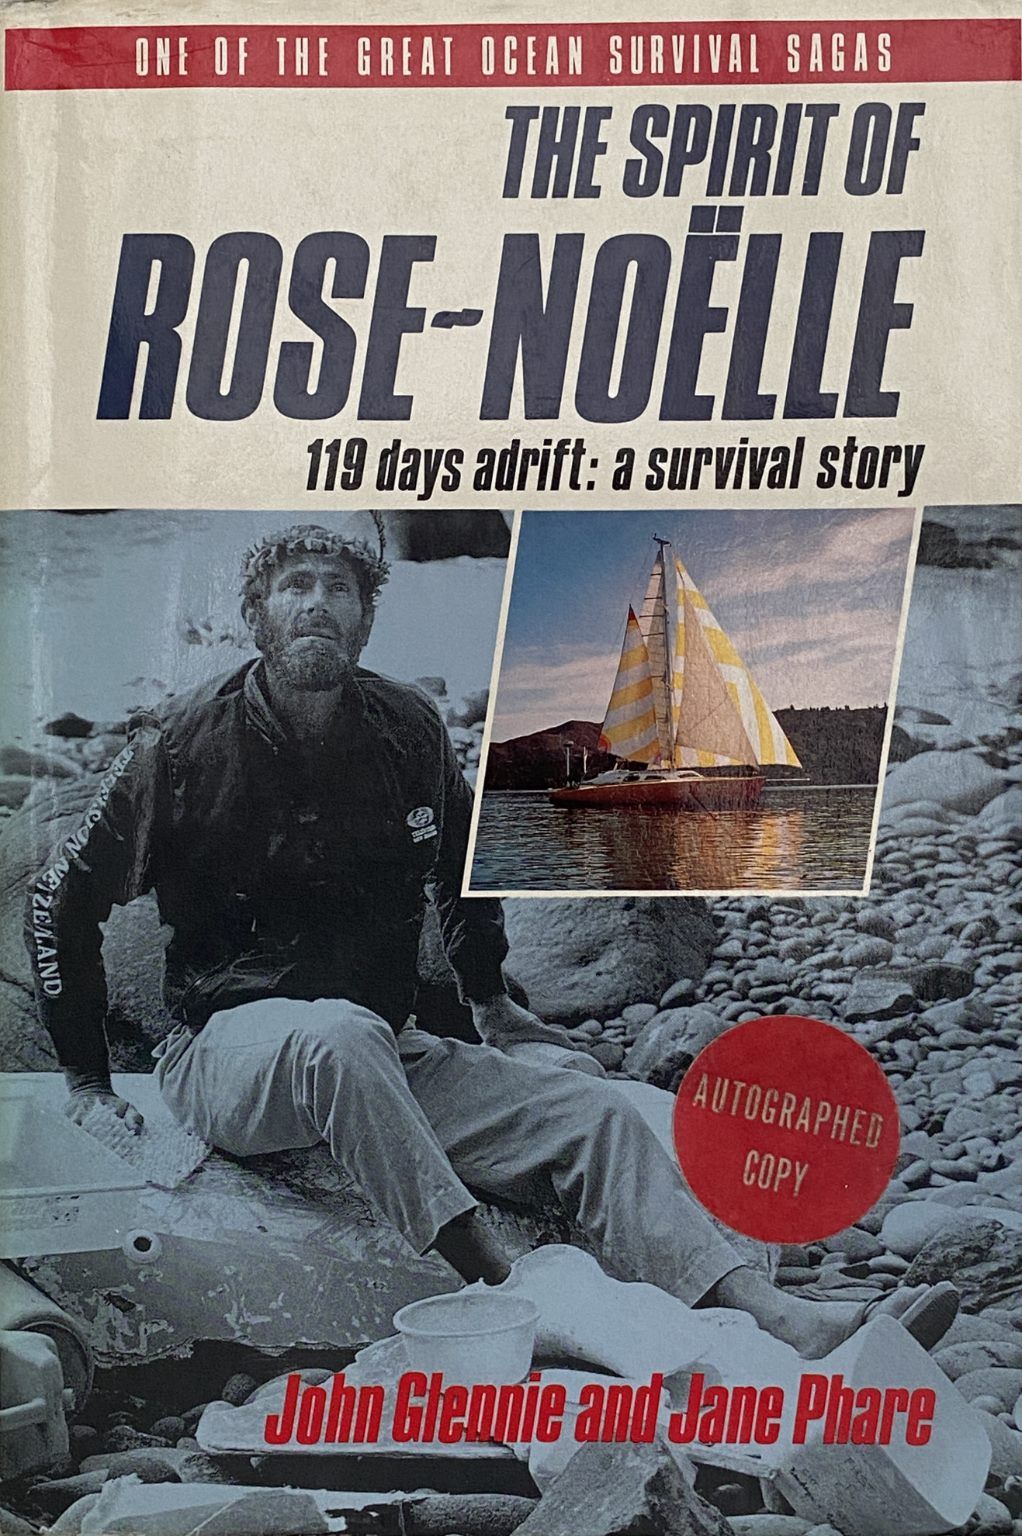 THE SPIRIT OF ROSE-NOELLE: 119 days adrift - a survival story